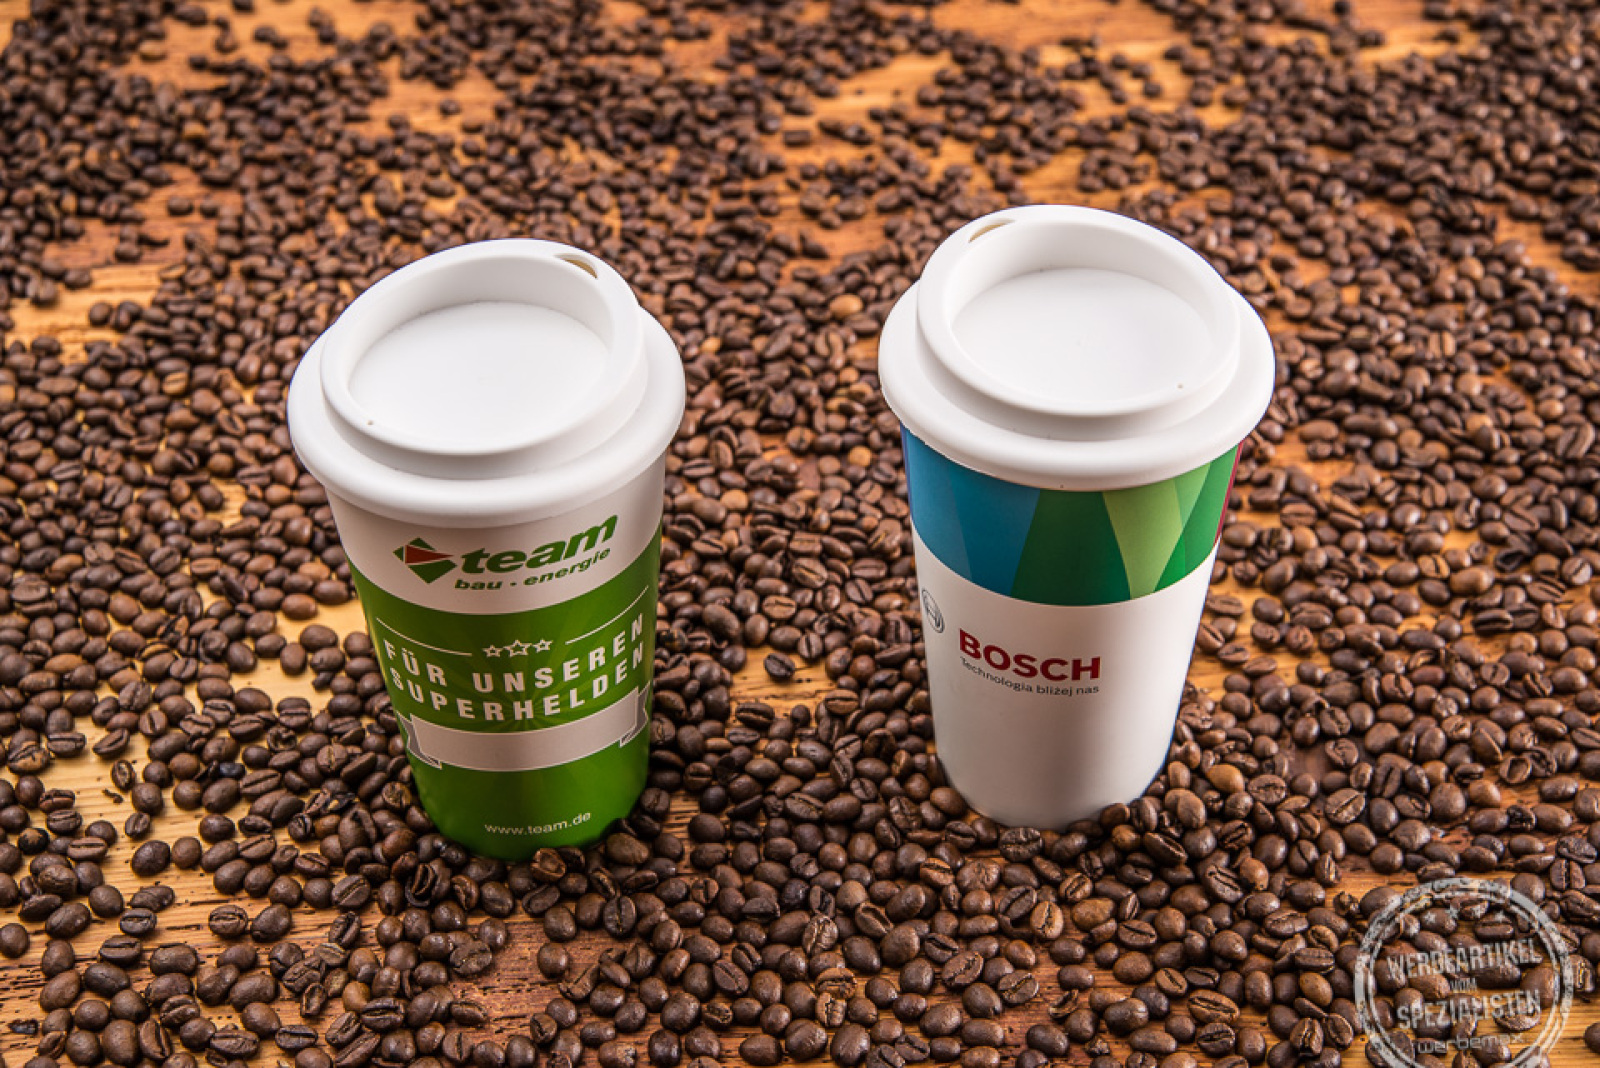 Kaffee Becher aus Kunststoff als Alternative zu bedruckten Einwegbechern